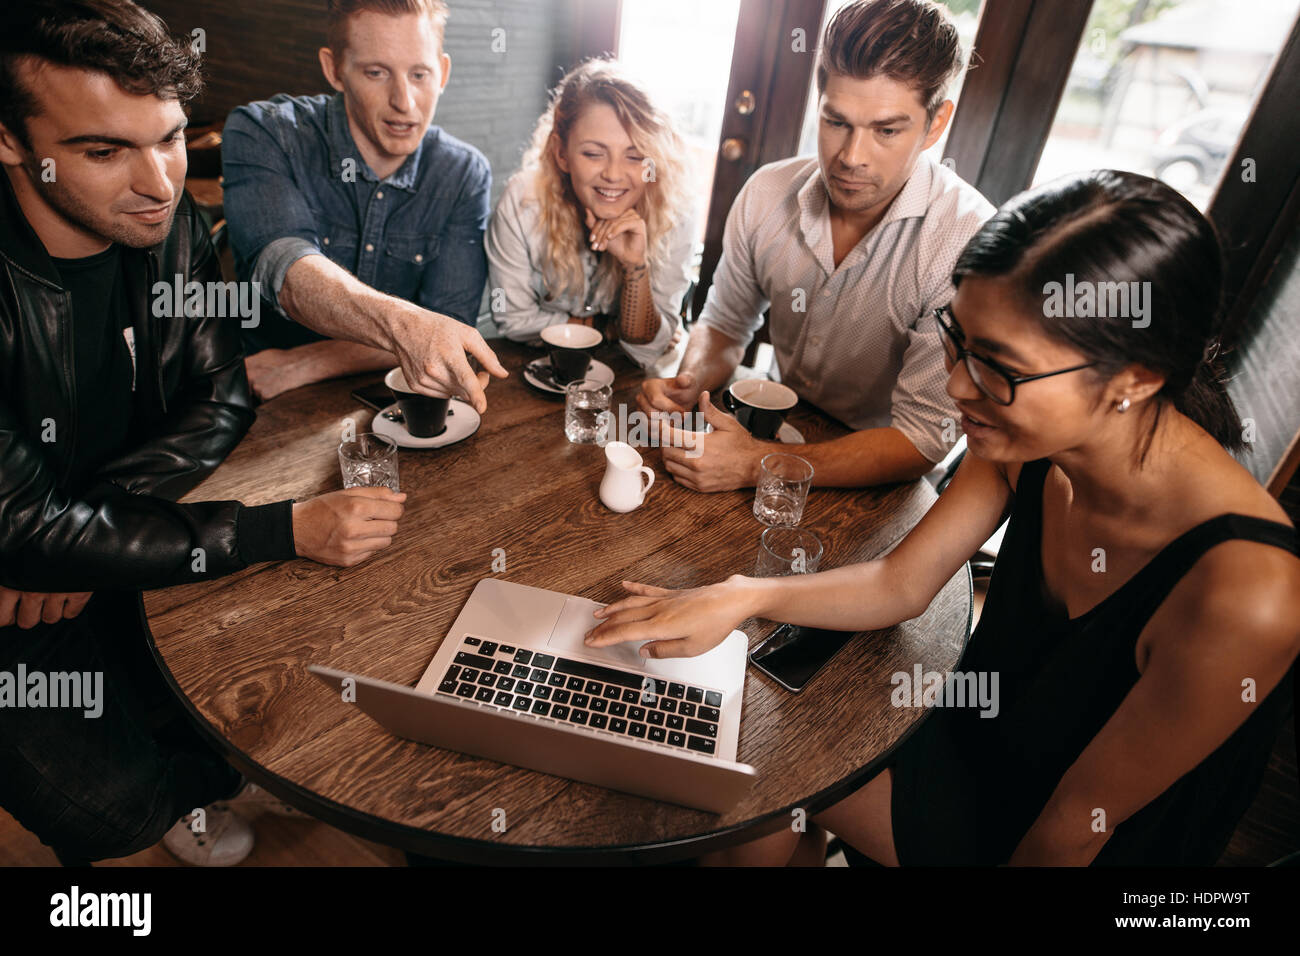 Groupe d'amis assis ensemble à café avec man pointing at laptop. Cinq jeunes gens au coffee shop Banque D'Images